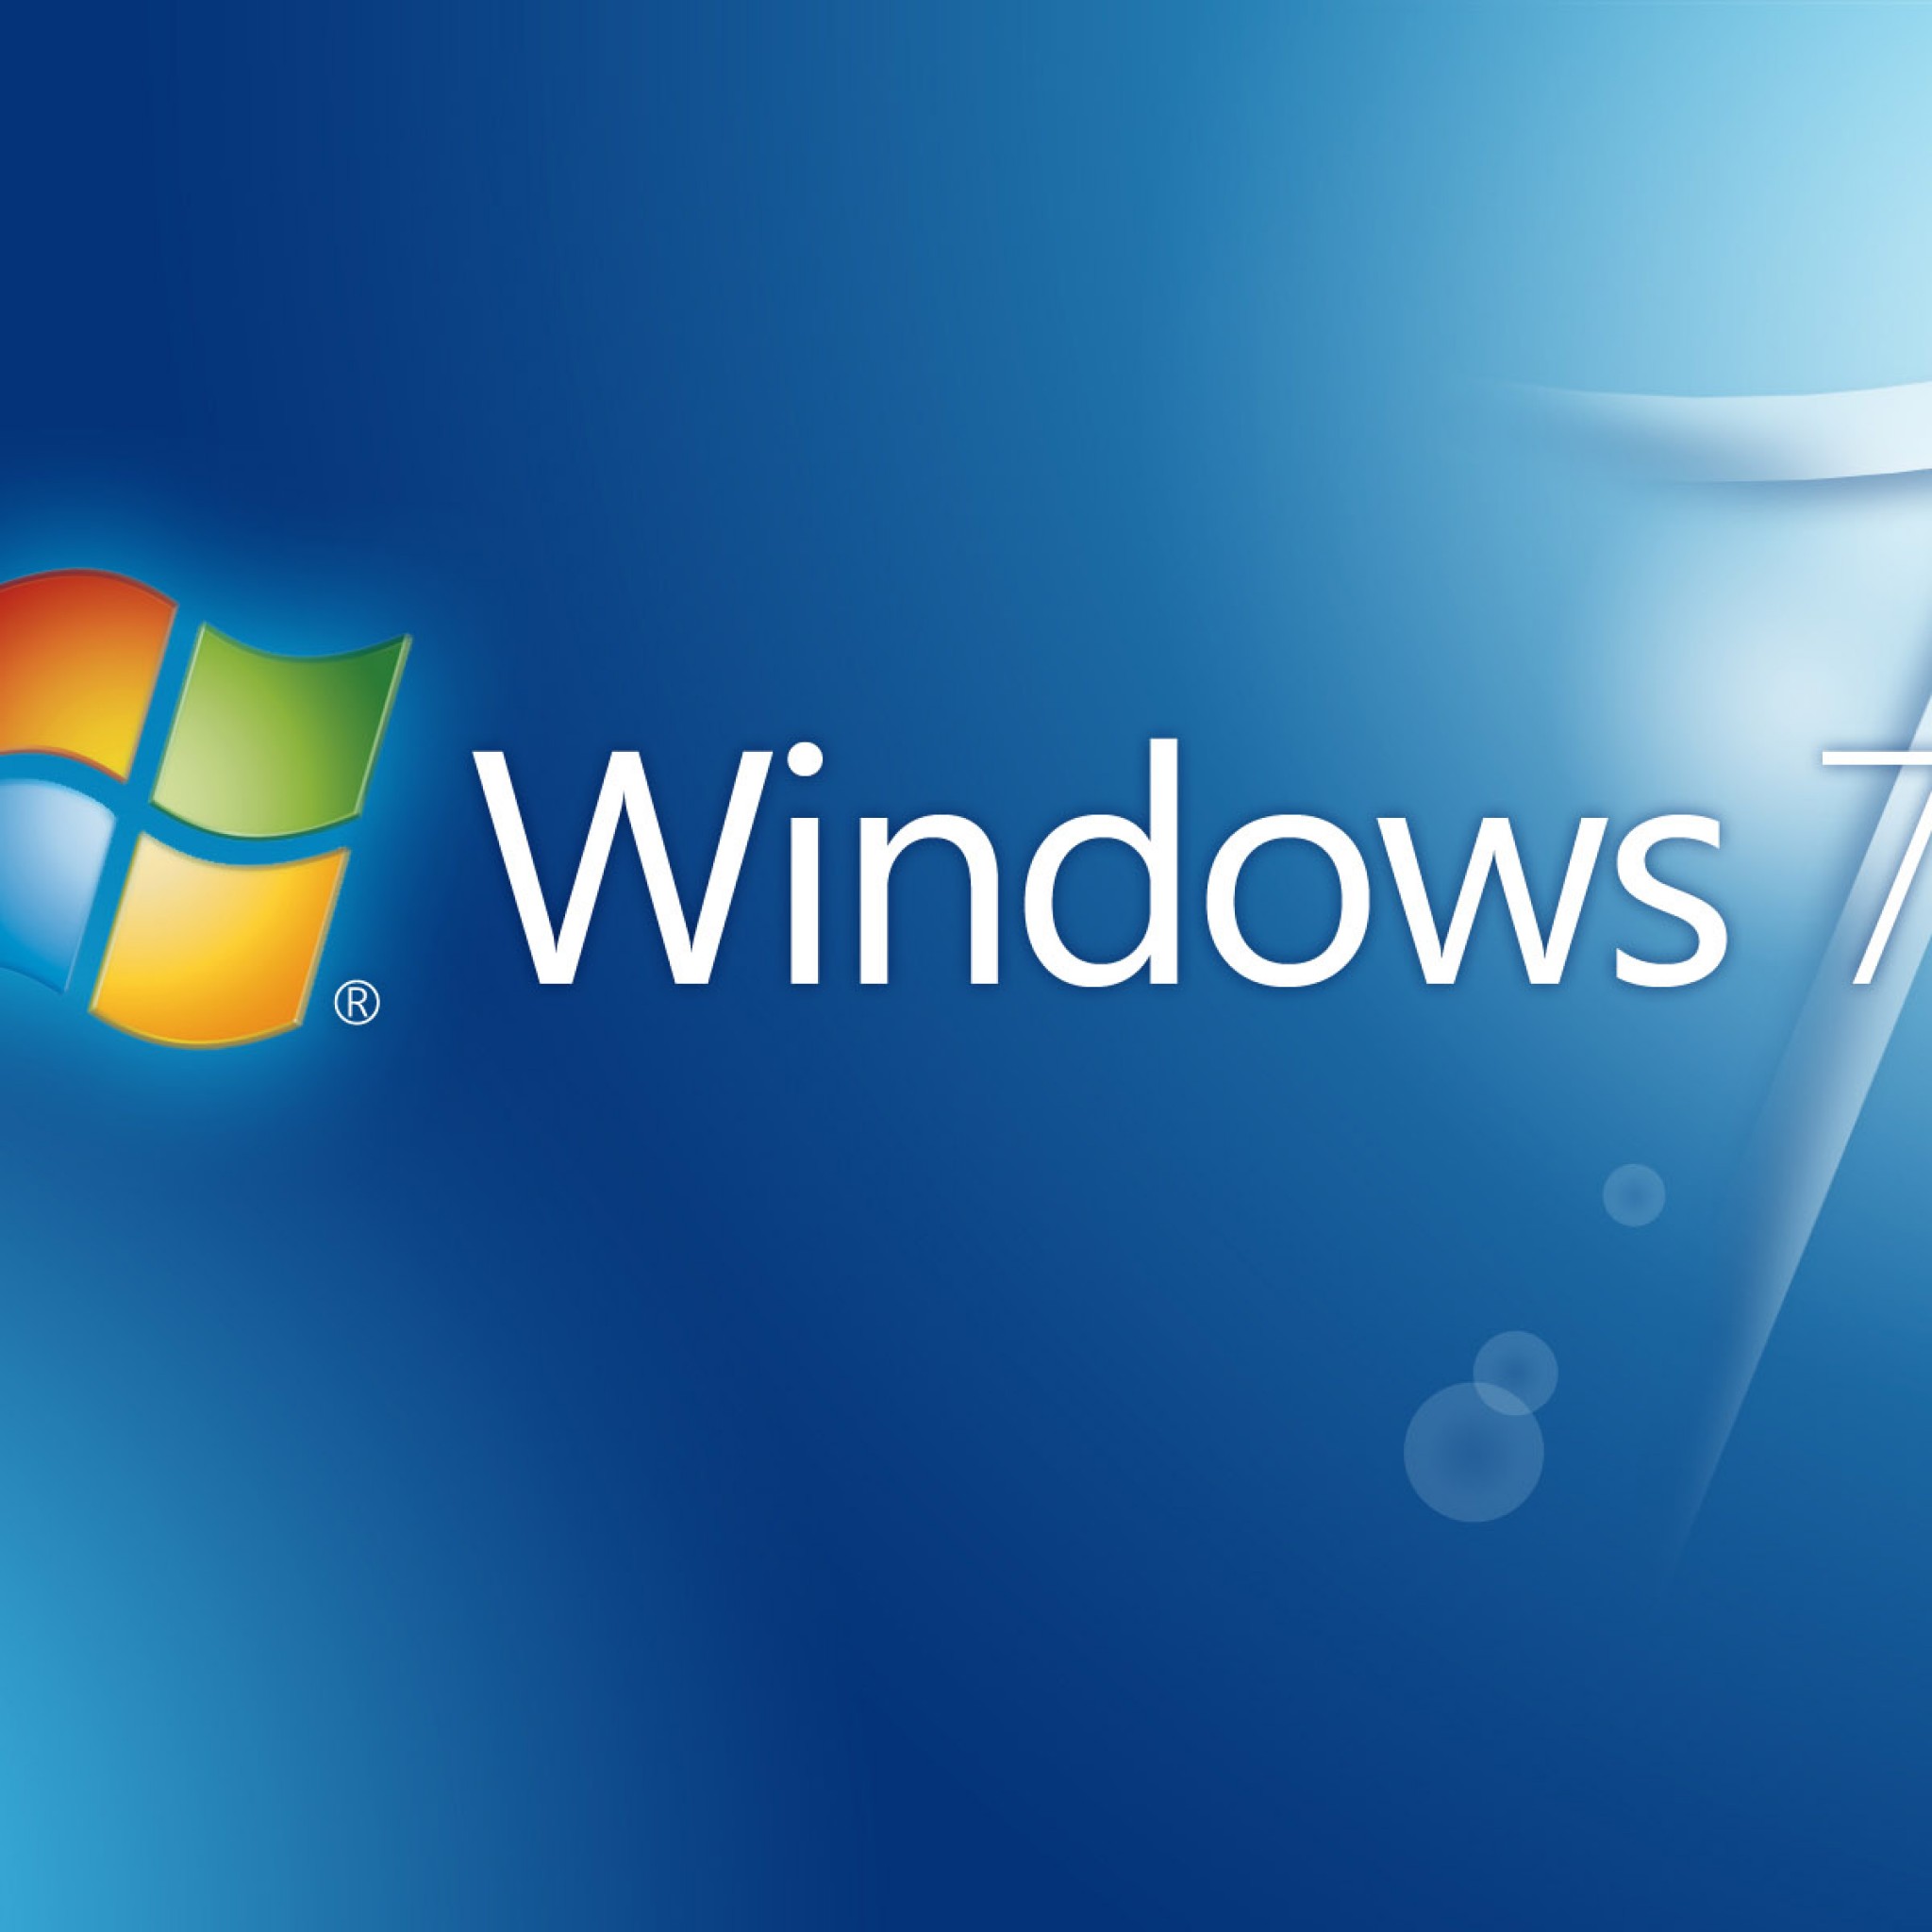 Windows 7 壁紙 Os Windows 青 最高の無料壁紙サイト Ipad タブレット壁紙ギャラリー